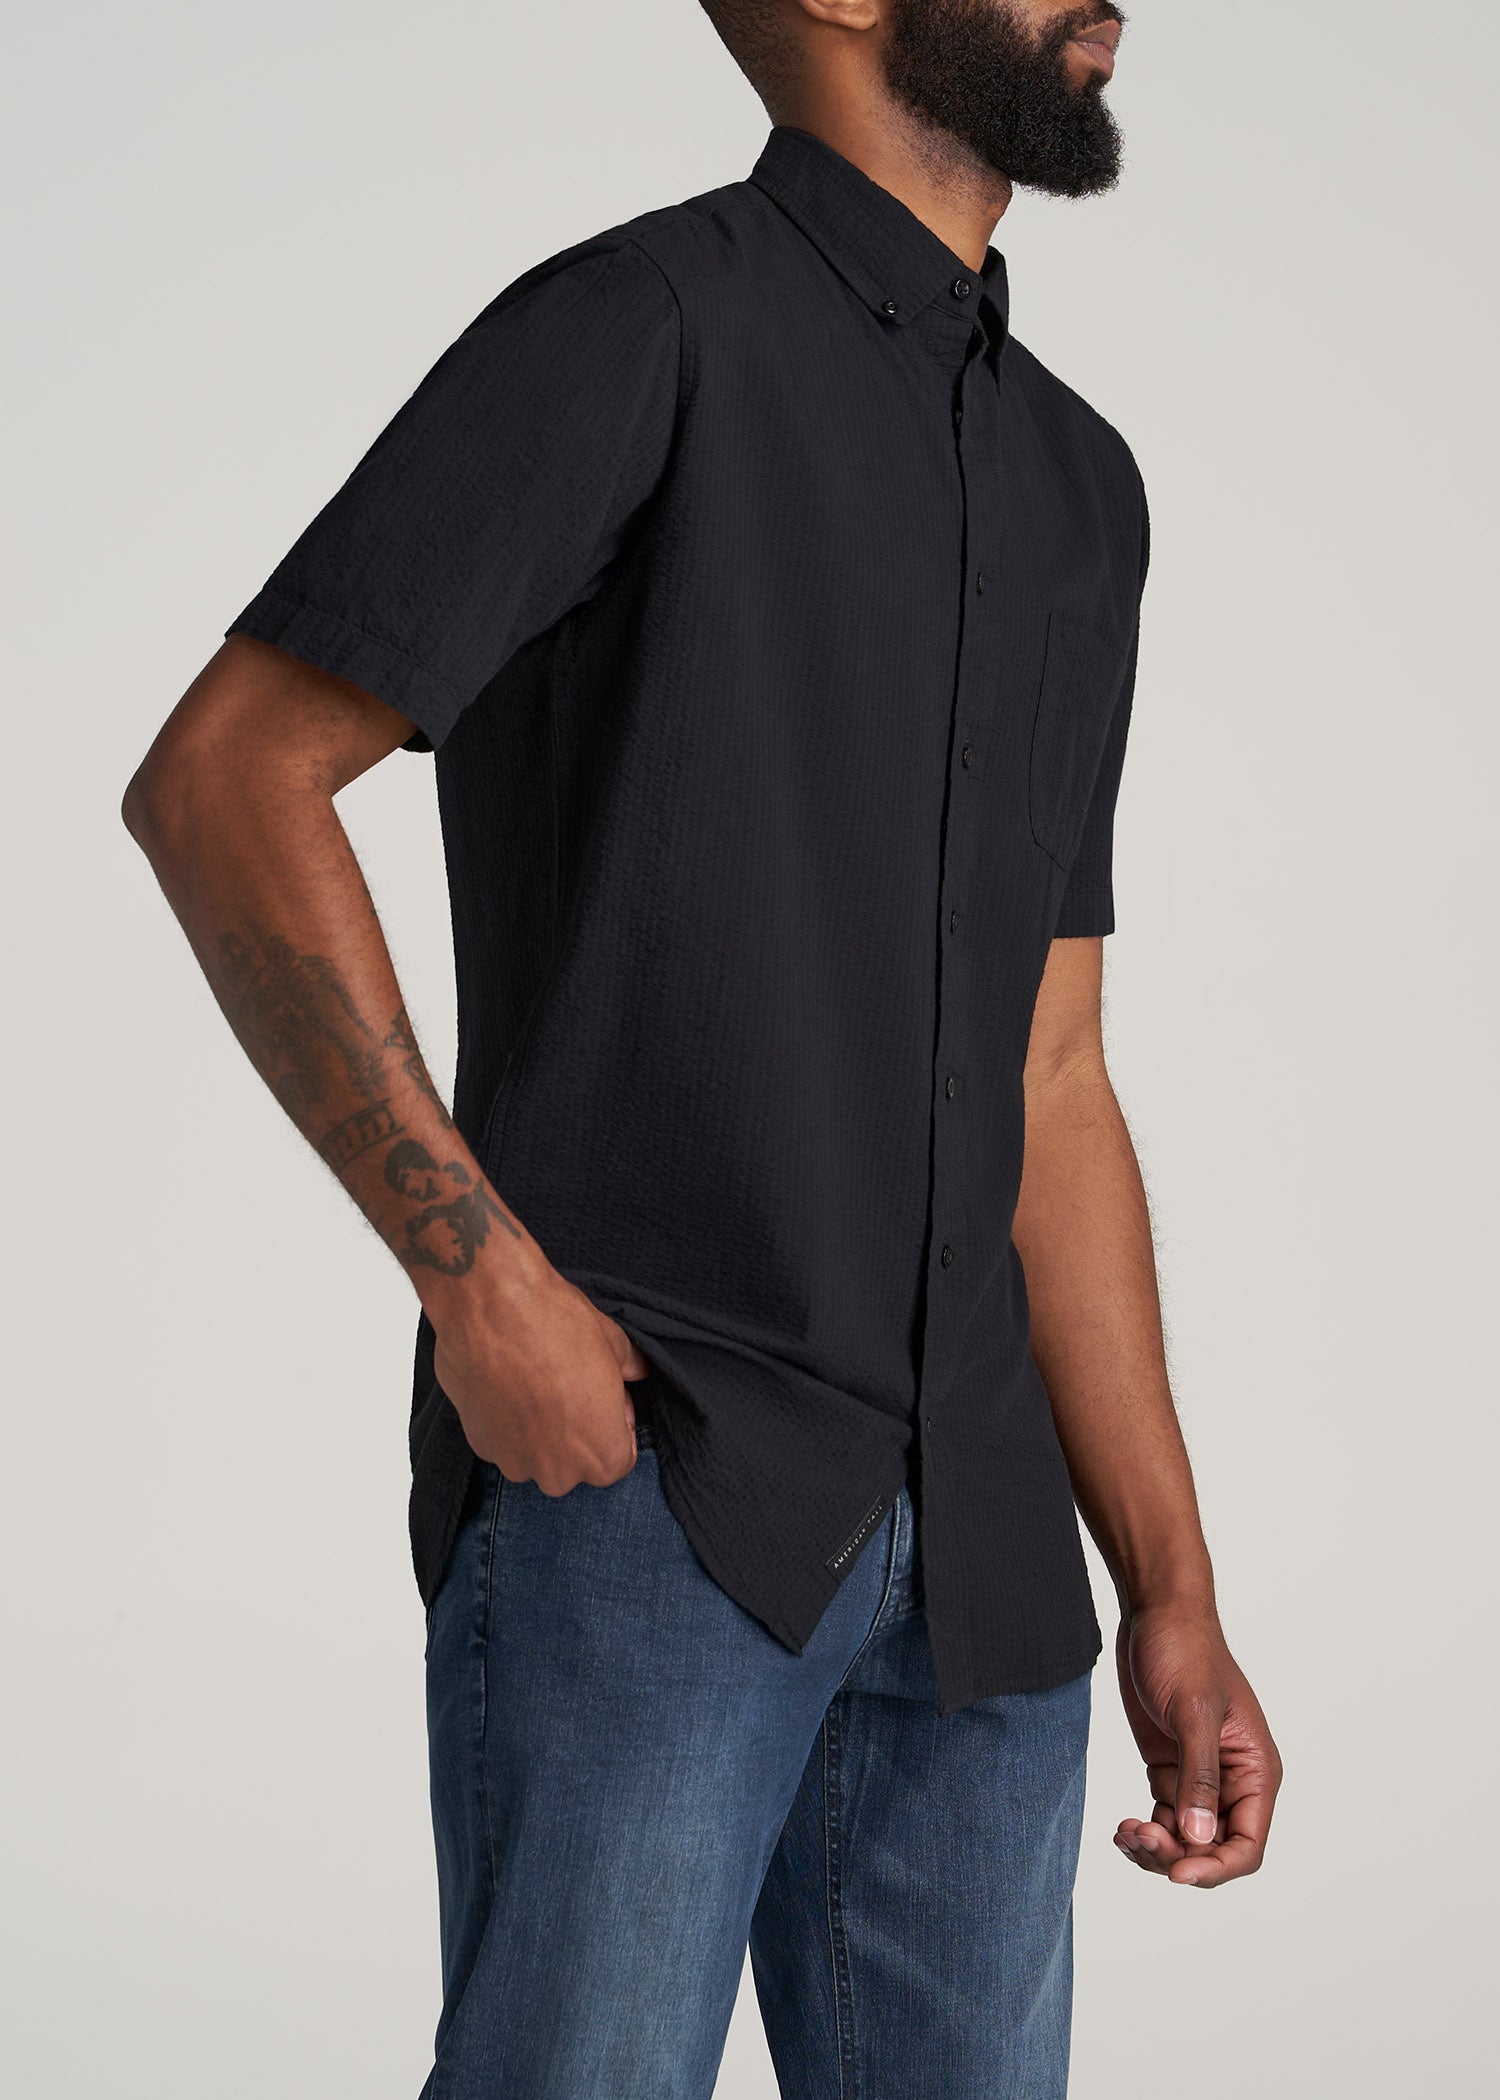 Black Seersucker Shirt: Tall Men Short Sleeve Black Shirt